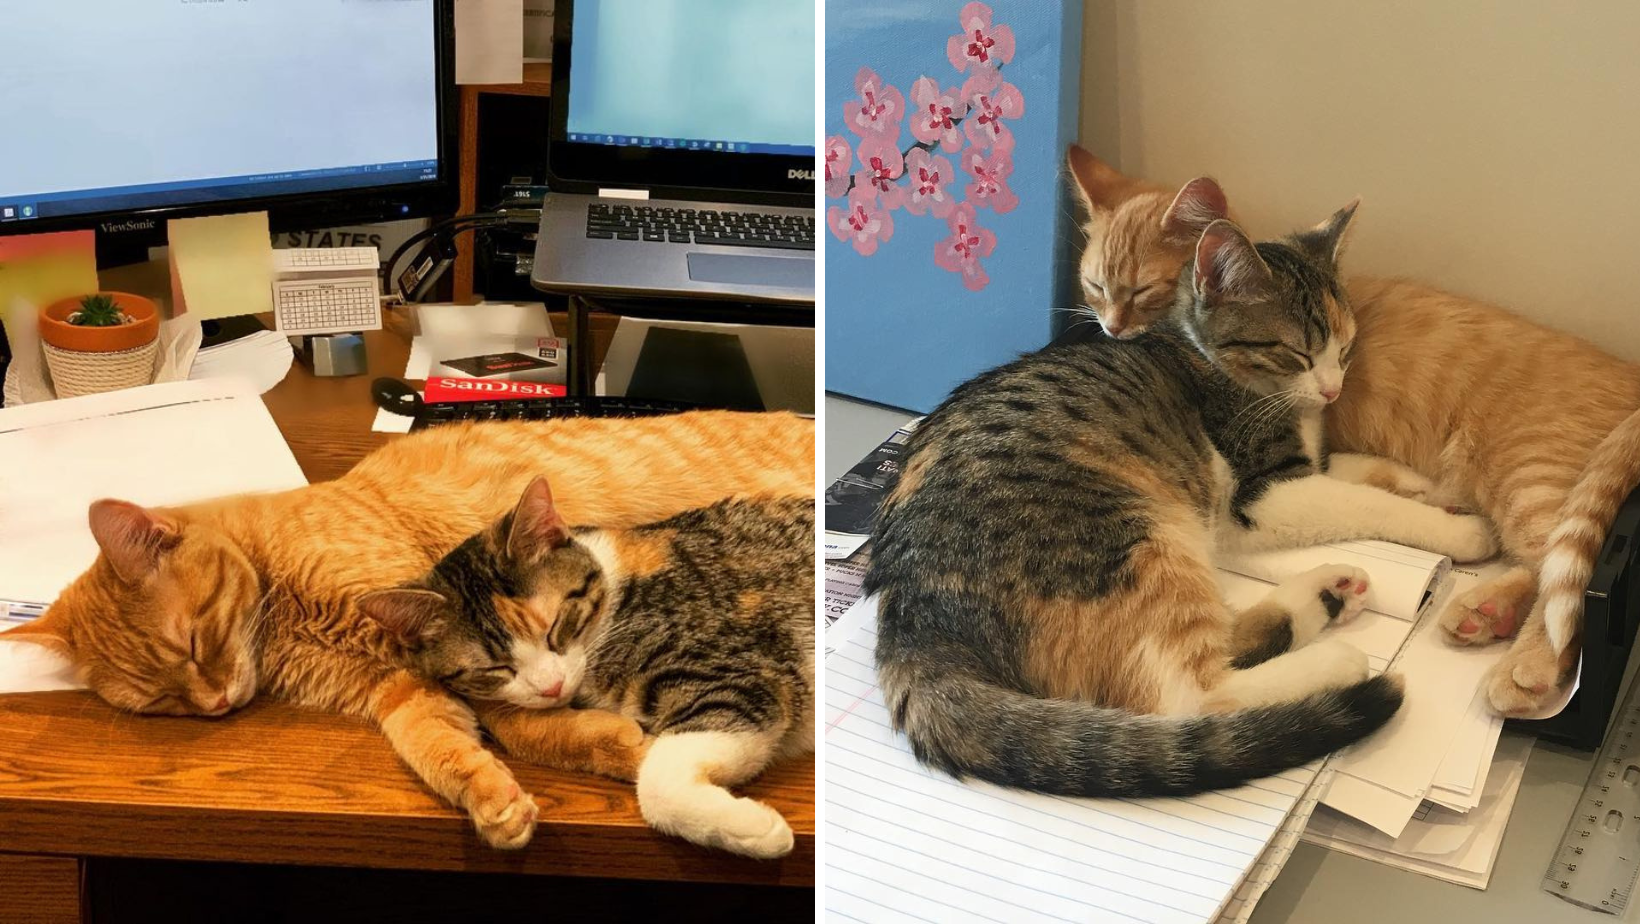 Ofis, Çalışanların Moralini İyileştirmek İçin İki Yavru Kedi Evlat Edinmeye Karar Verdi